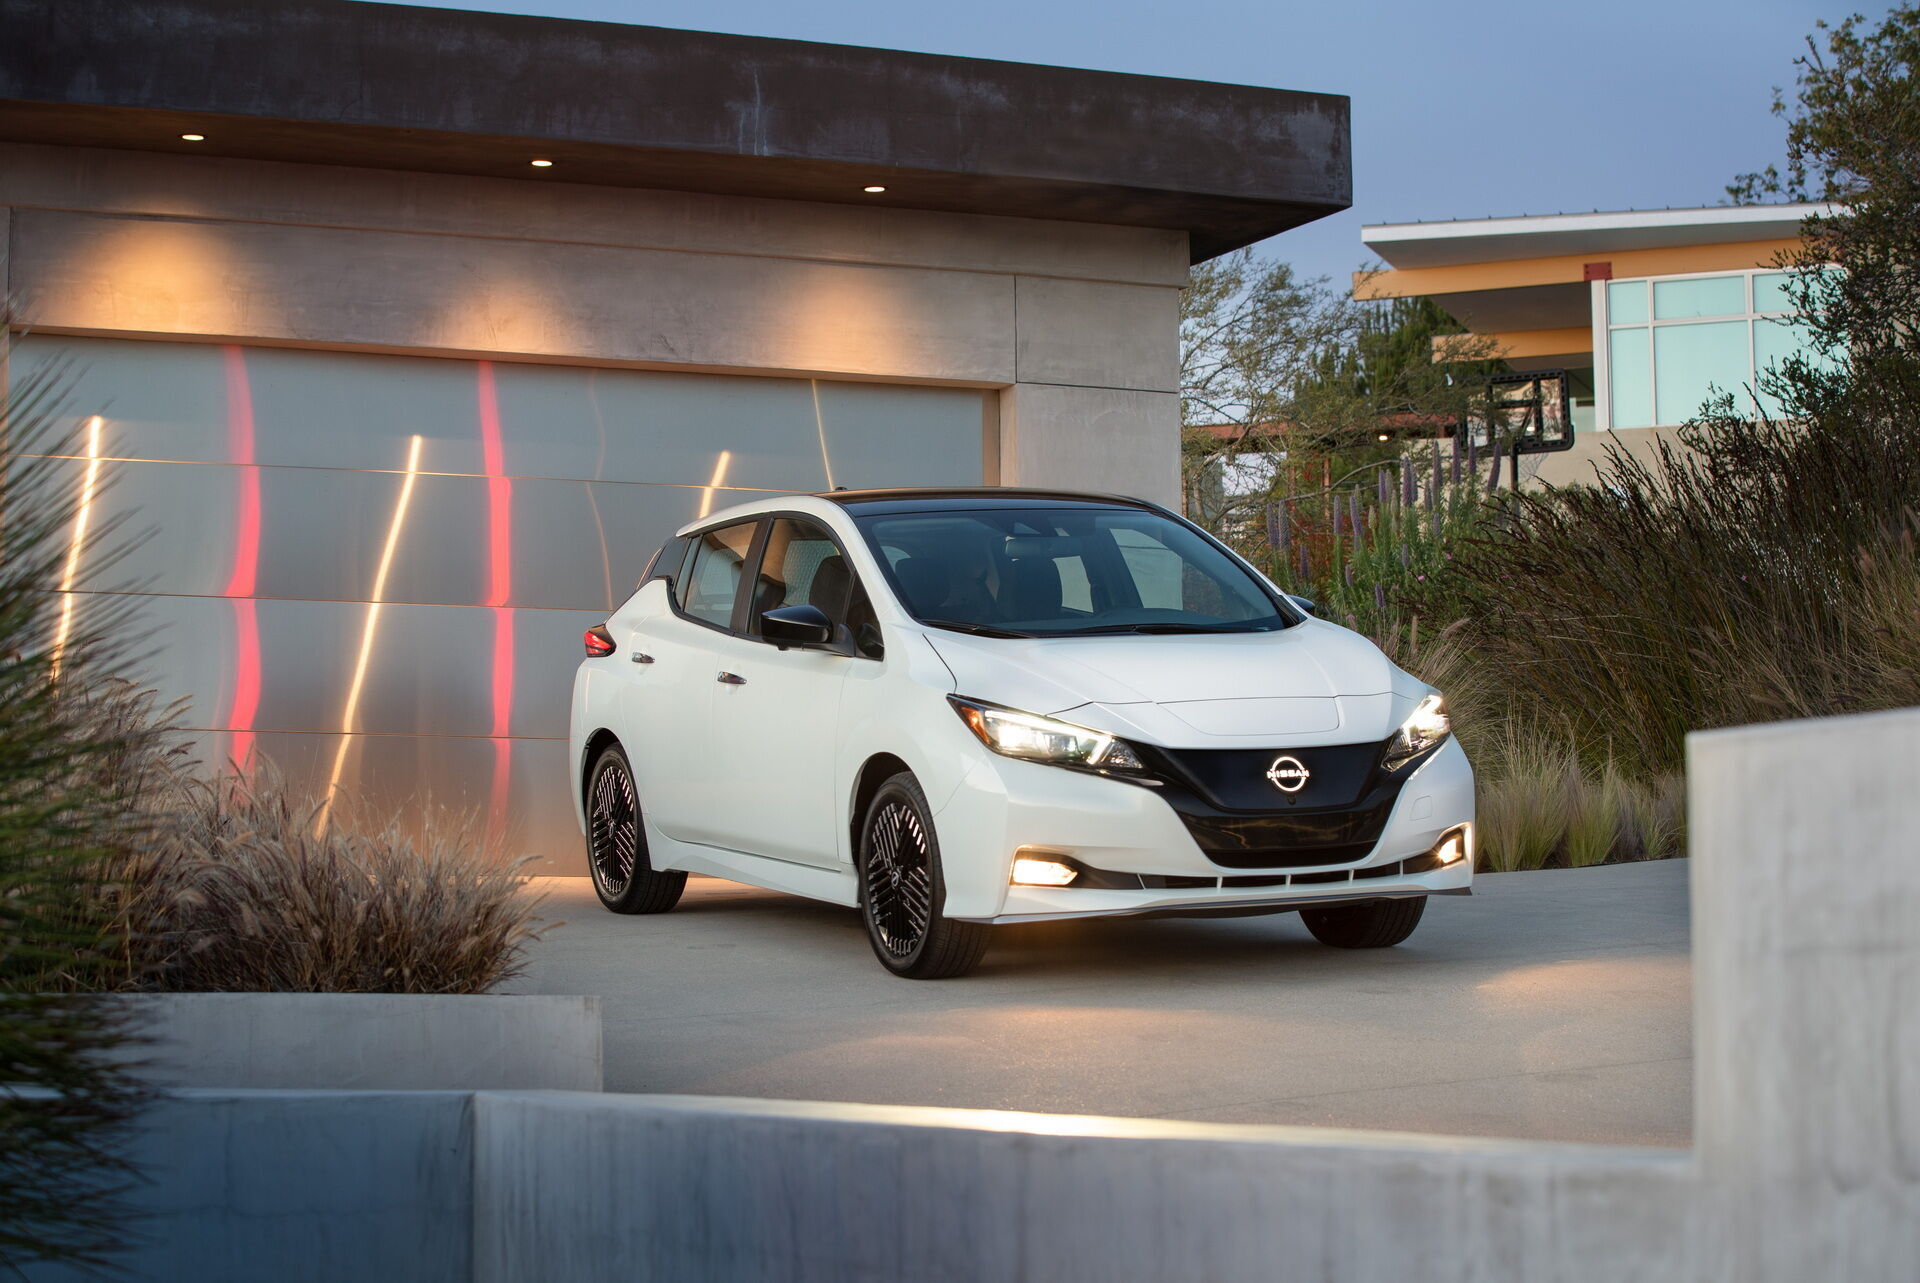 Японская компания Nissan представит на автошоу в Нью-Йорке обновленный электромобиль Leaf